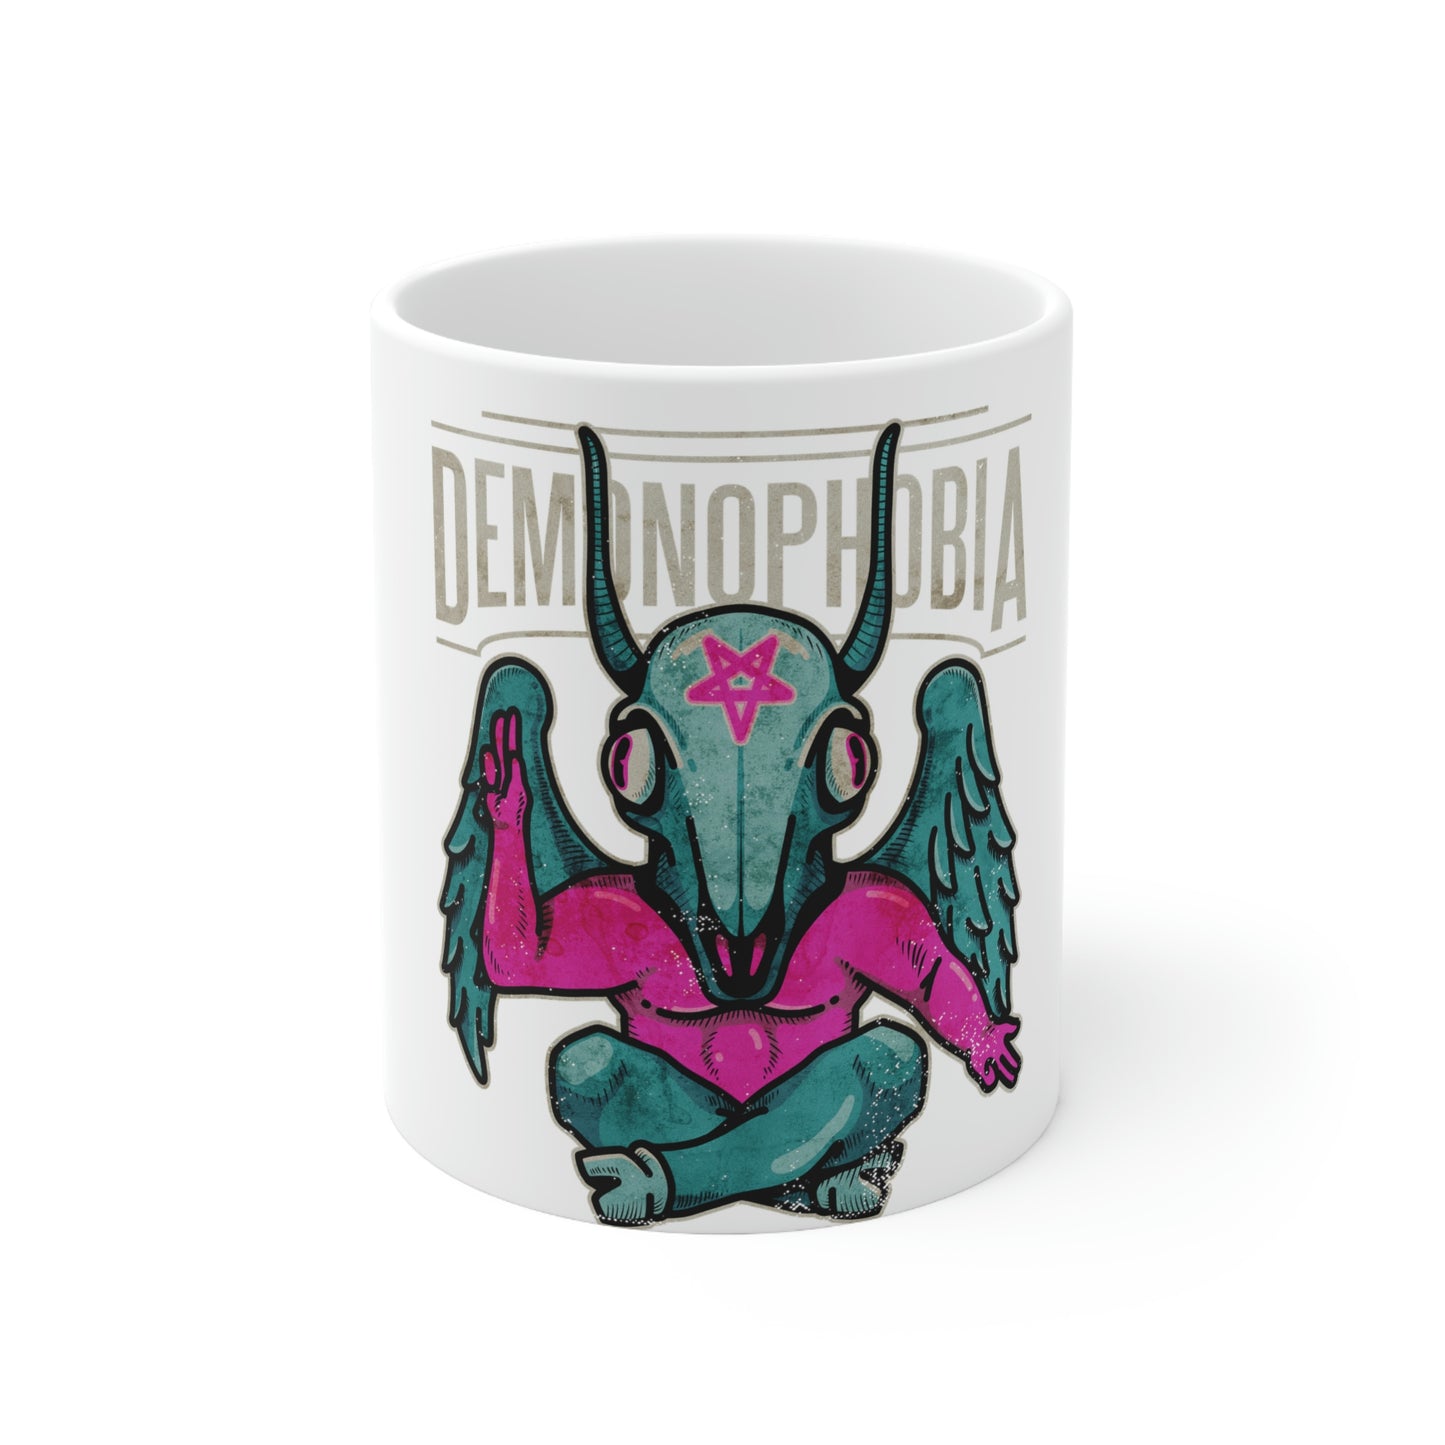 Demonphobia, Goth Aesthetic White Ceramic Mug